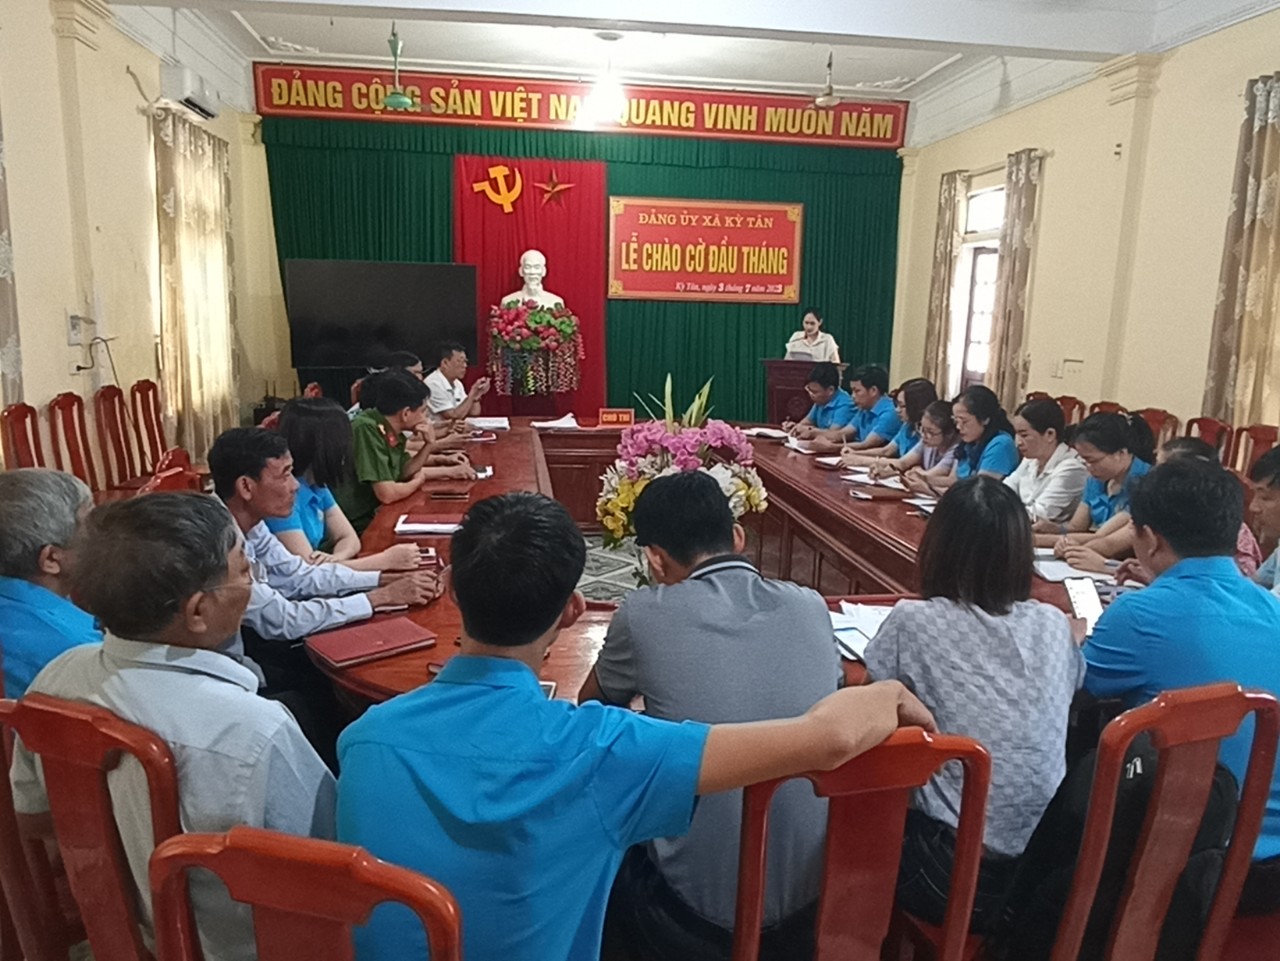 Đảng ủy tổ chức Lễ chào cờ đầu tháng 7 và độc mẫu chuyện về tấm gương đạo đức Hồ Chí Minh